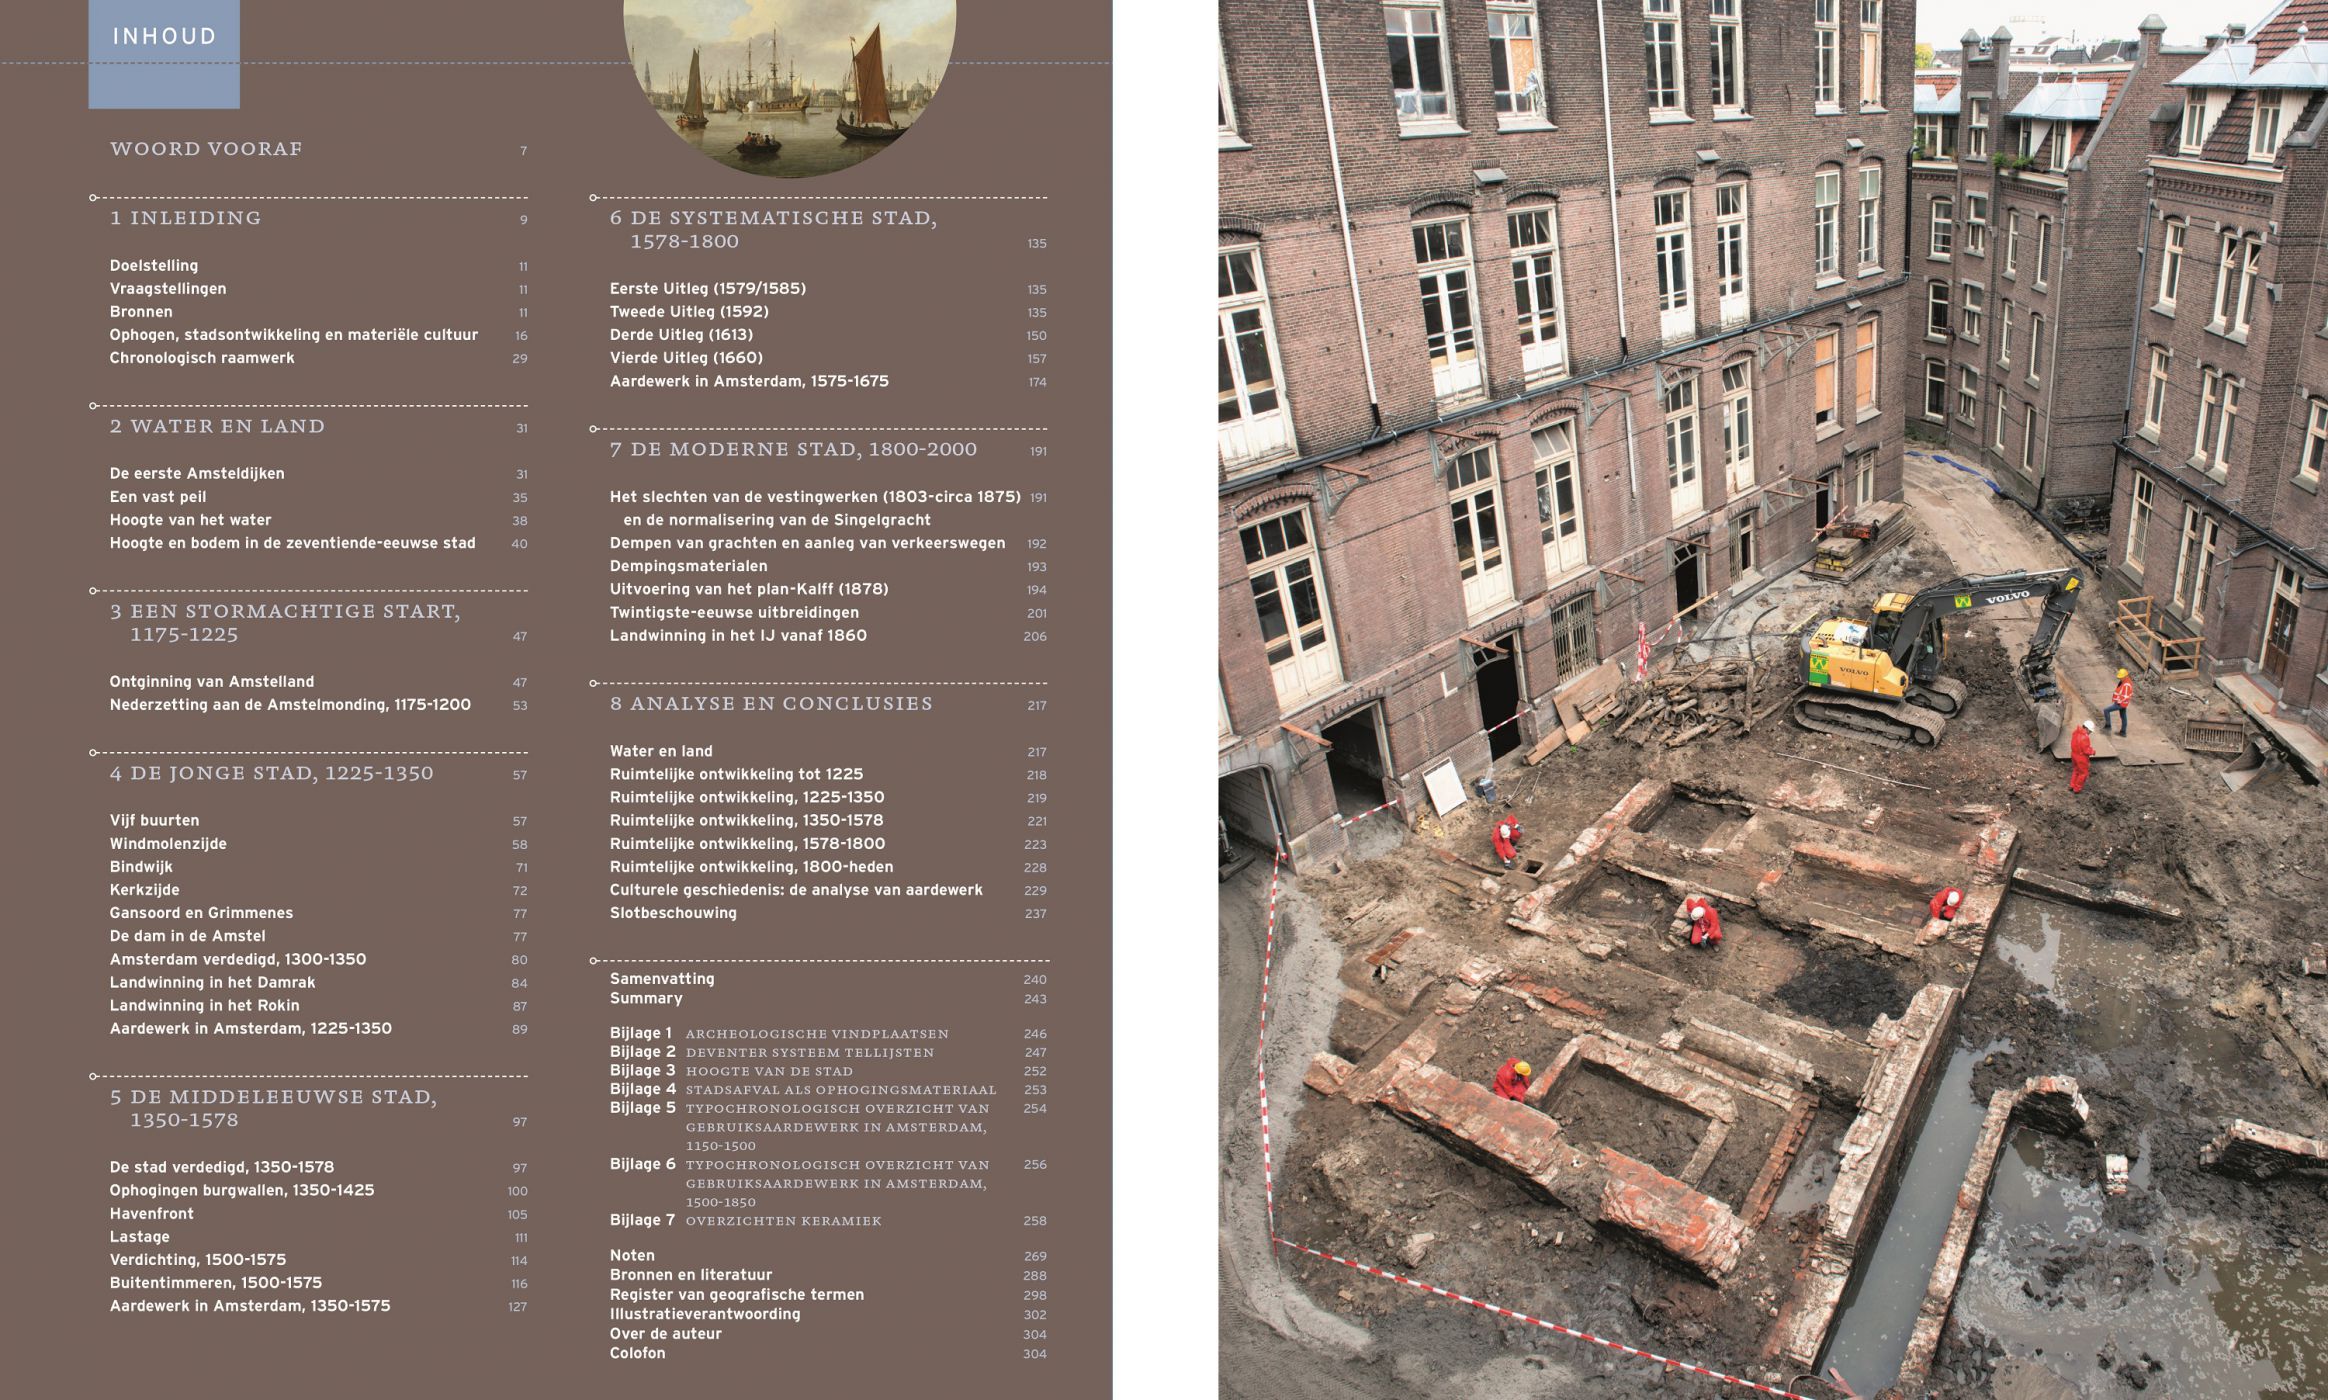 Inkijkexemplaar van het boek: <em>Graaf- en modderwerk. Een archeologische stadsgeschiedenis van Amsterdam</em> - © Uitgeverij Matrijs